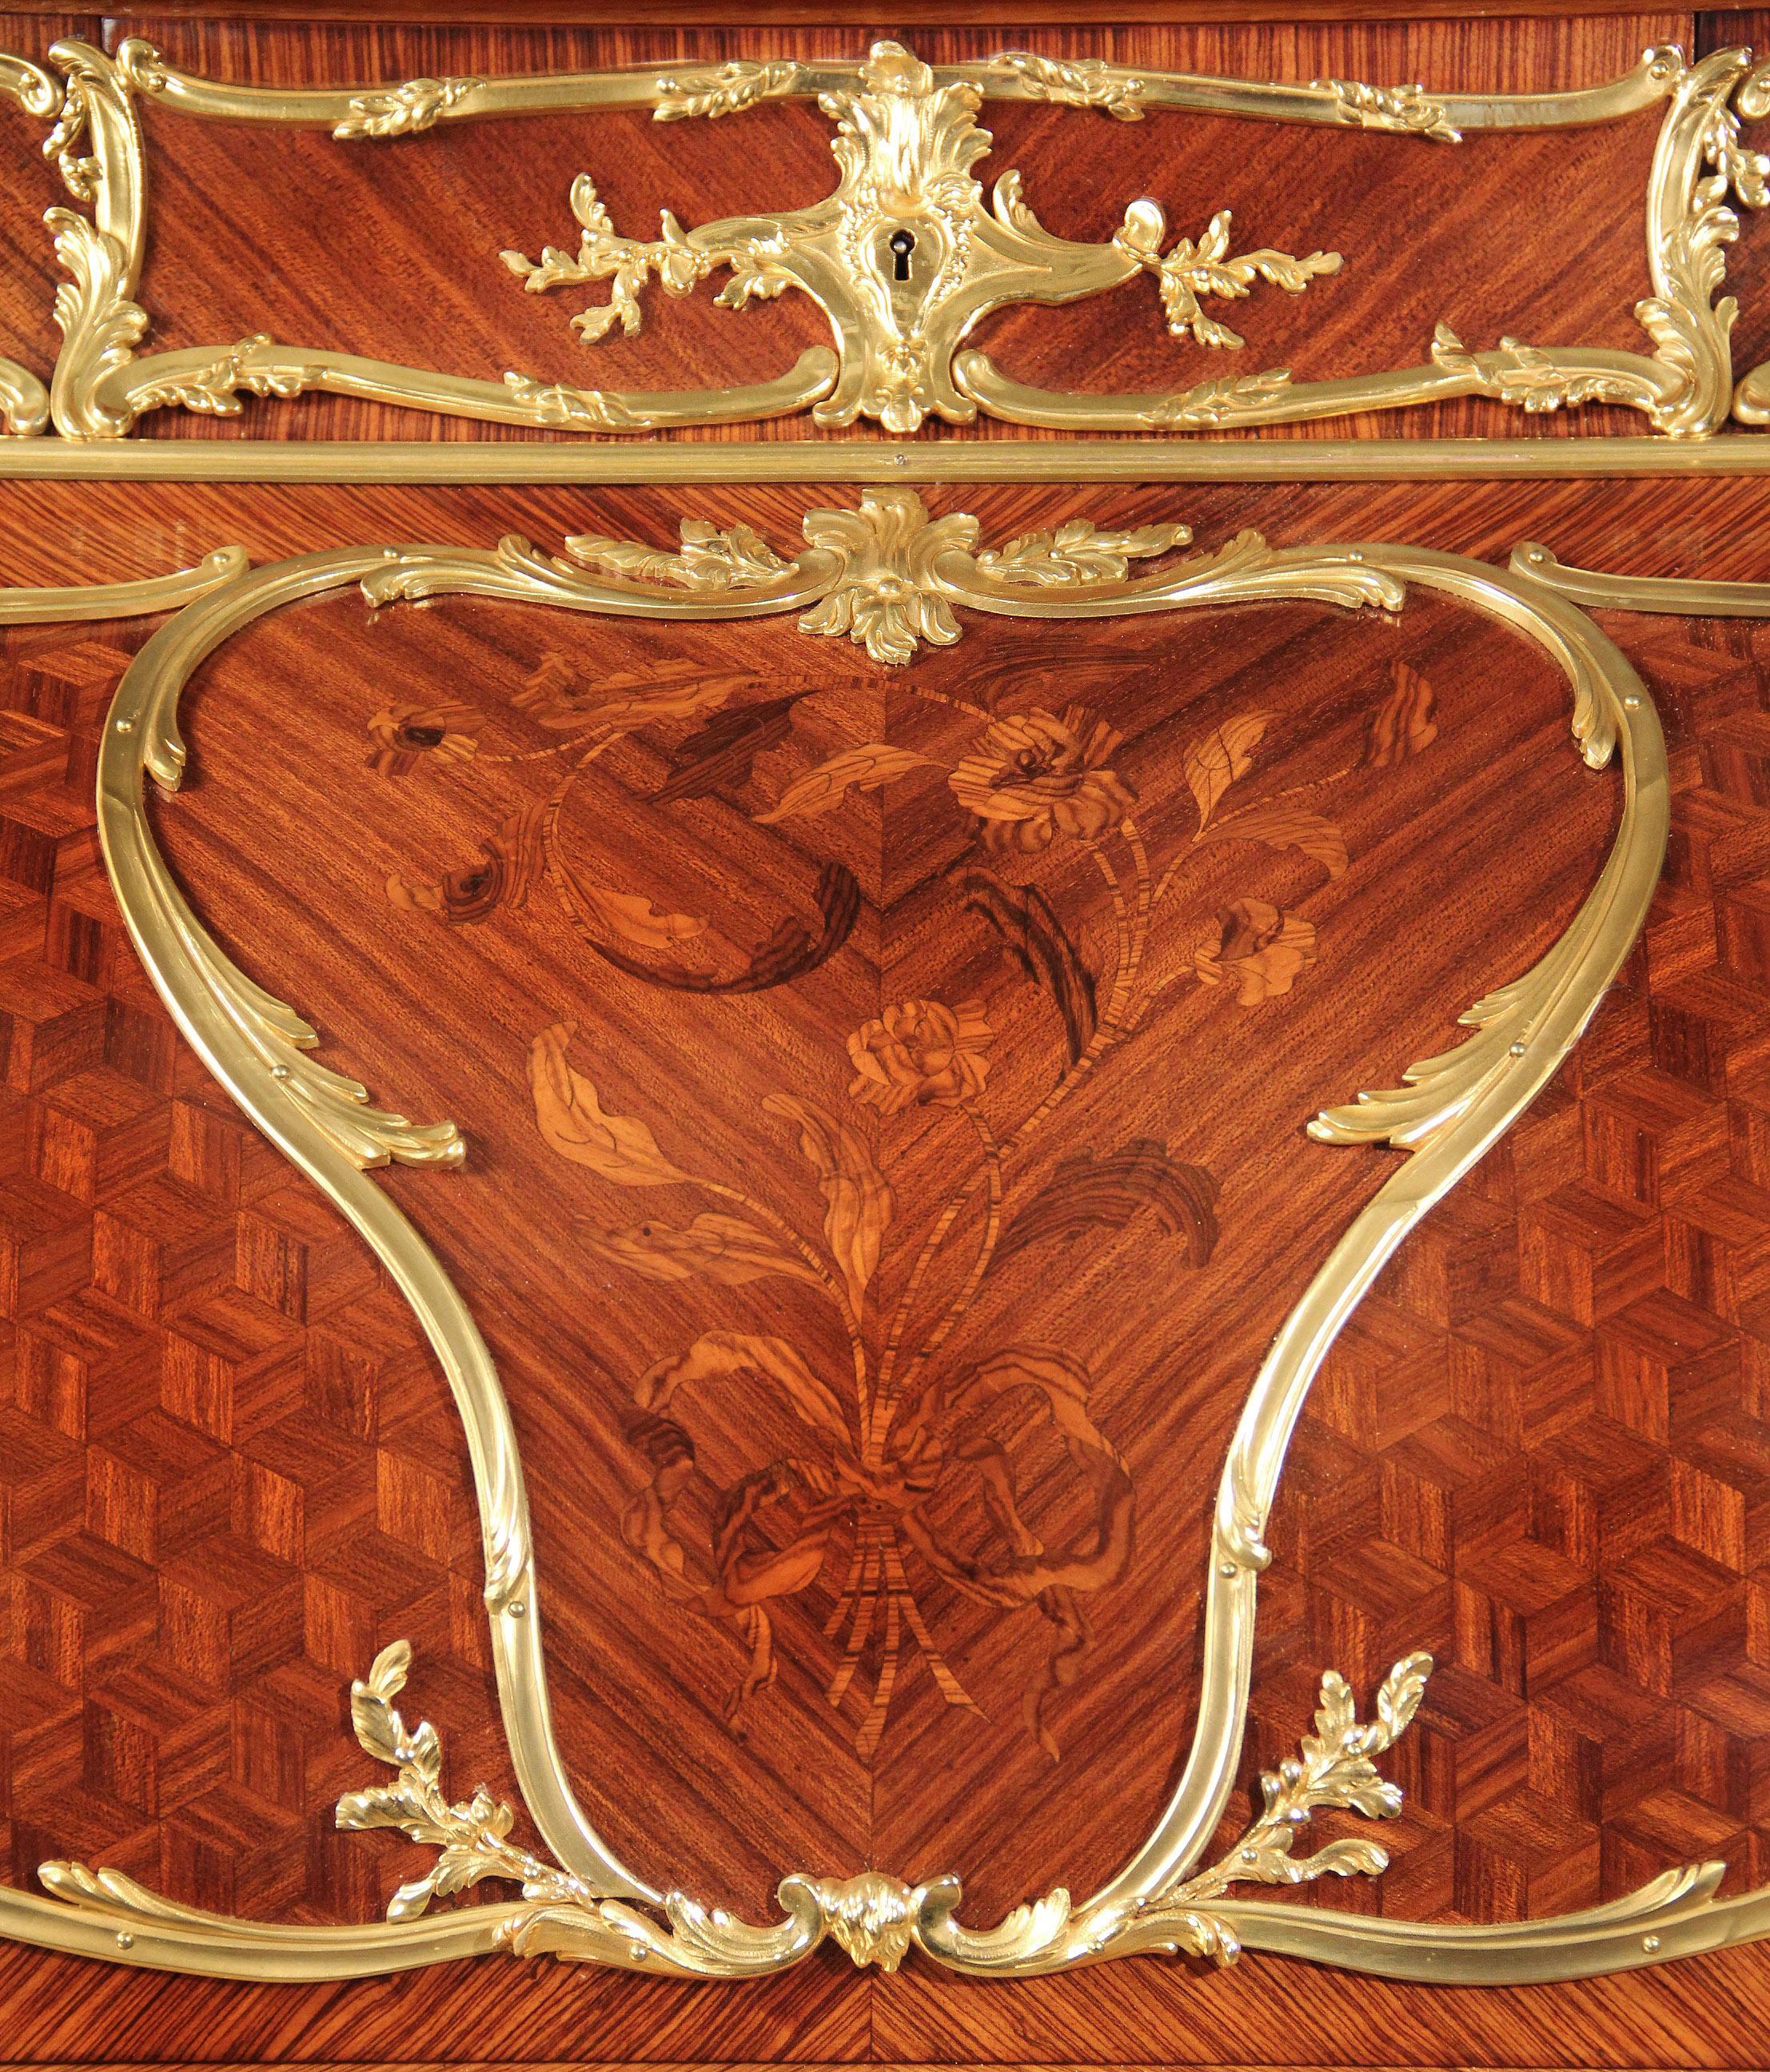 Bureau à cylindre de la fin du 19e siècle de style Louis XV en marqueterie et parquet monté sur bronze doré.

Par François Linke - Index n° 393.

La partie supérieure est ornée d'une galerie d'acanthe façonnée et ajourée, au-dessus de trois